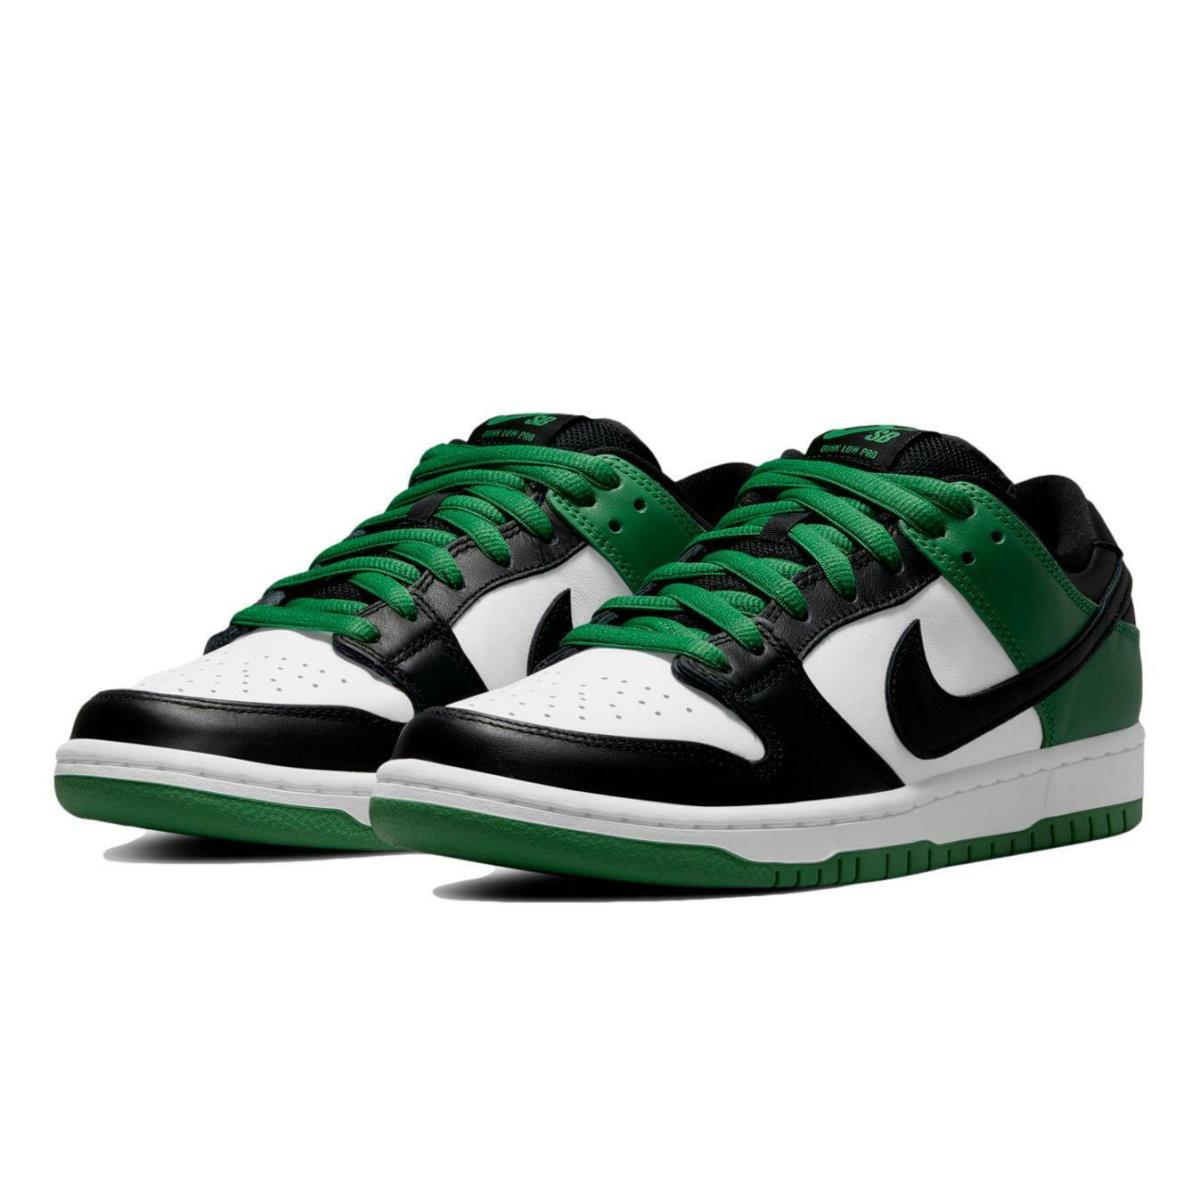 Nike SB Dunk Low Pro `classic Green` Shoes BQ6817-302 - Green